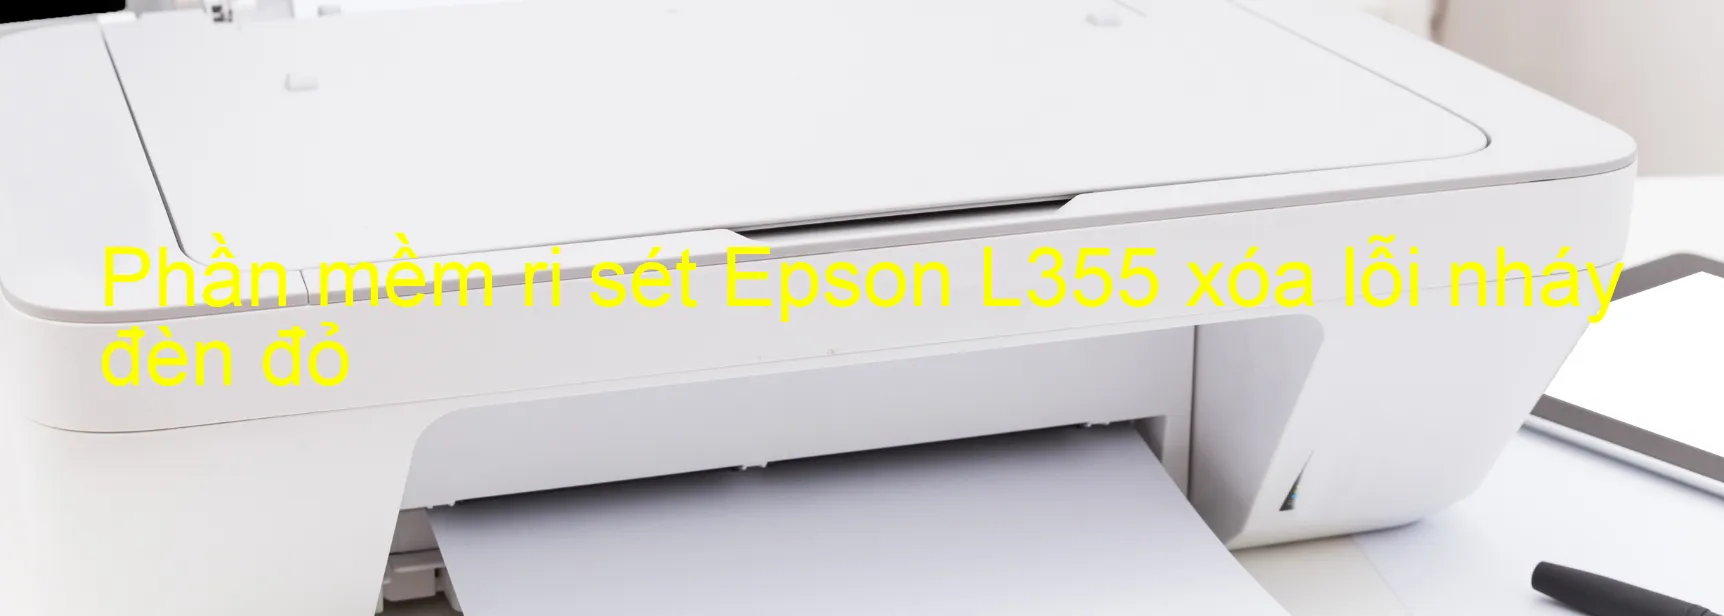 Phần mềm reset Epson L355 xóa lỗi nháy đèn đỏ